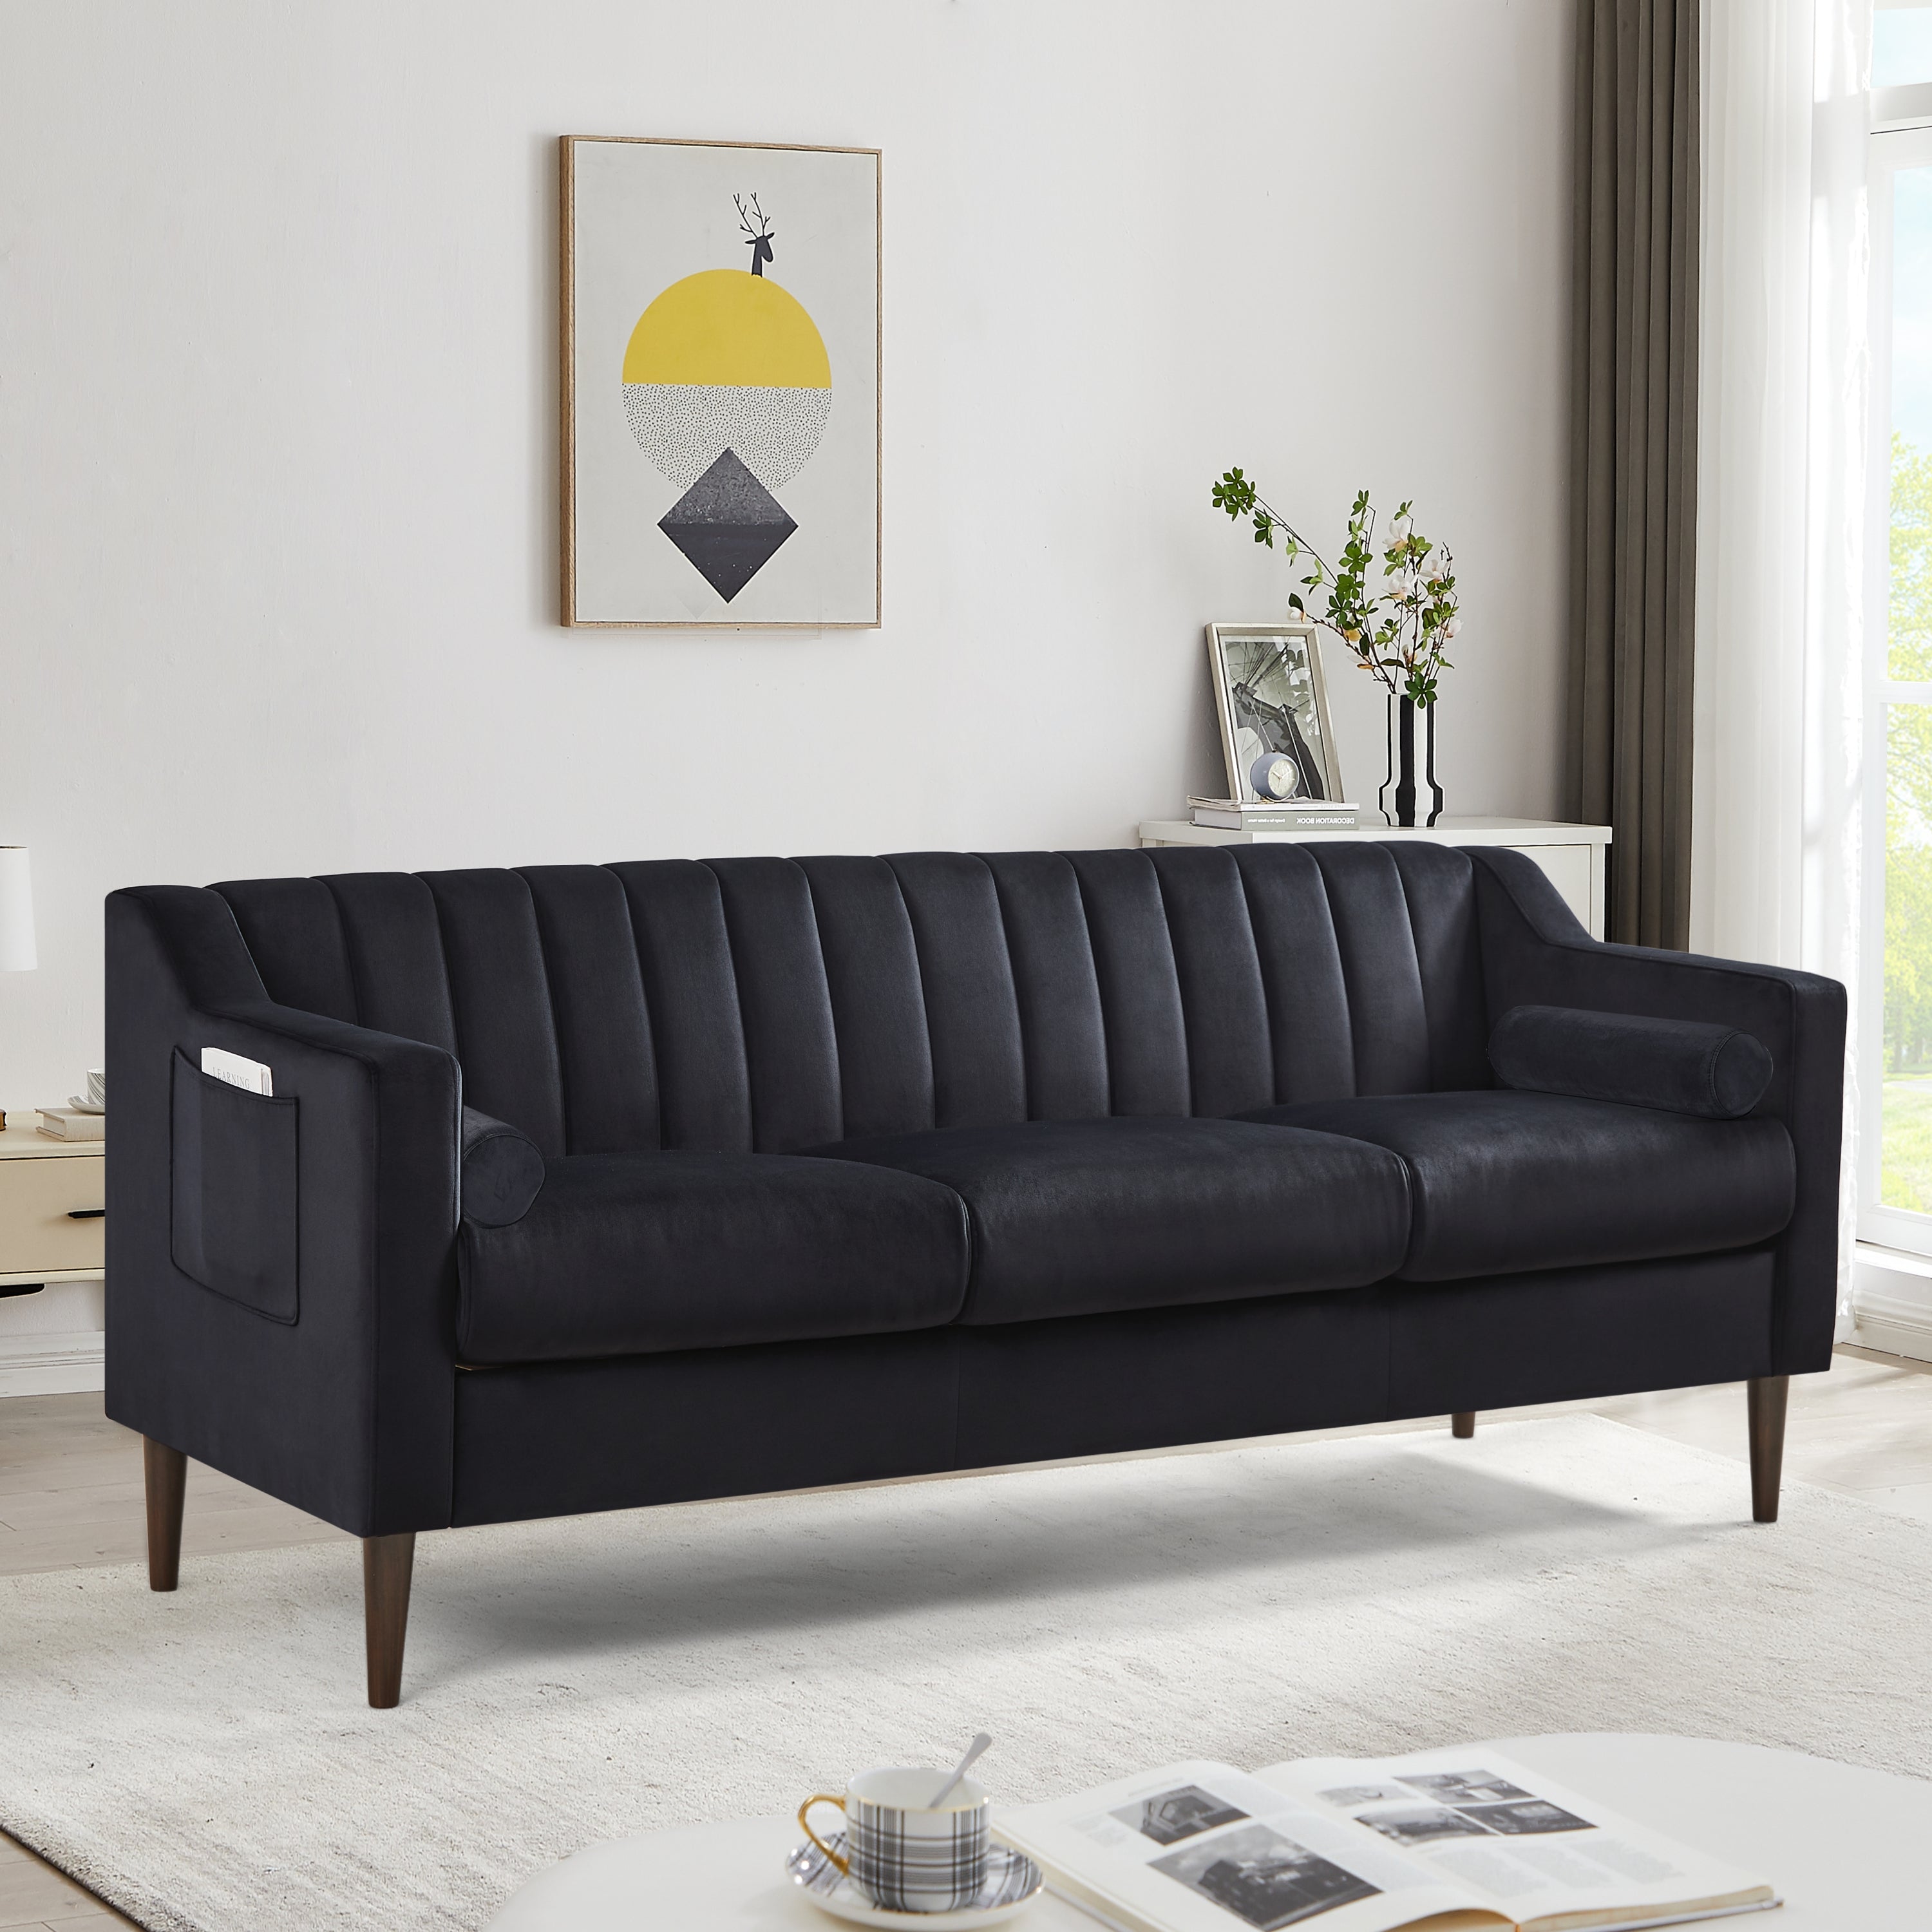 77" Velvet Upholstered Modern Sofa with Channel Tufted Back